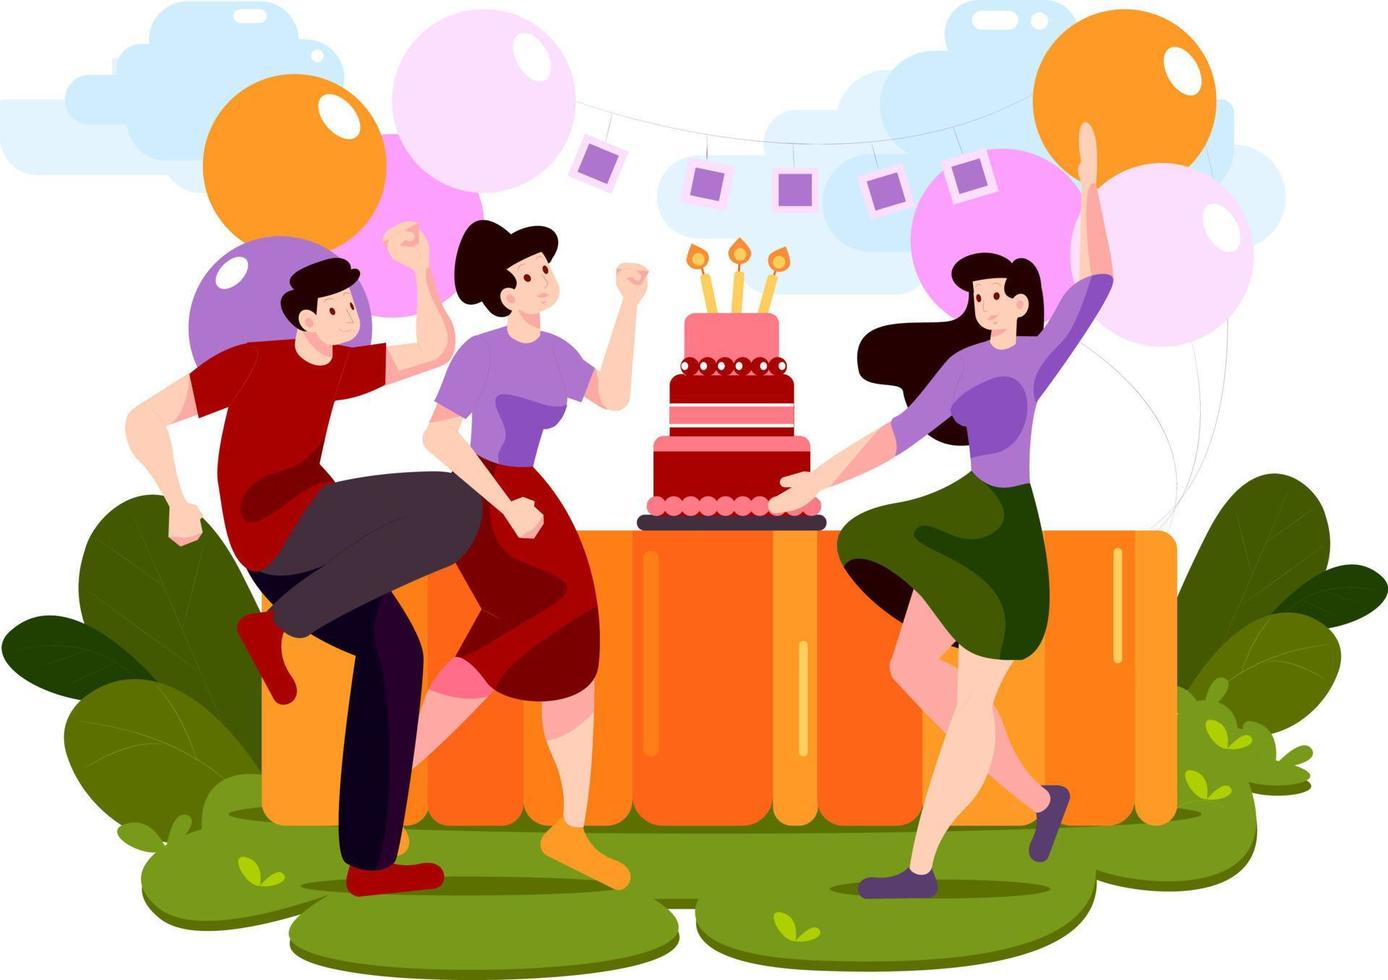 groep jongeren met feestelijke attributen tijdens dansen op verjaardagsfeestje vector